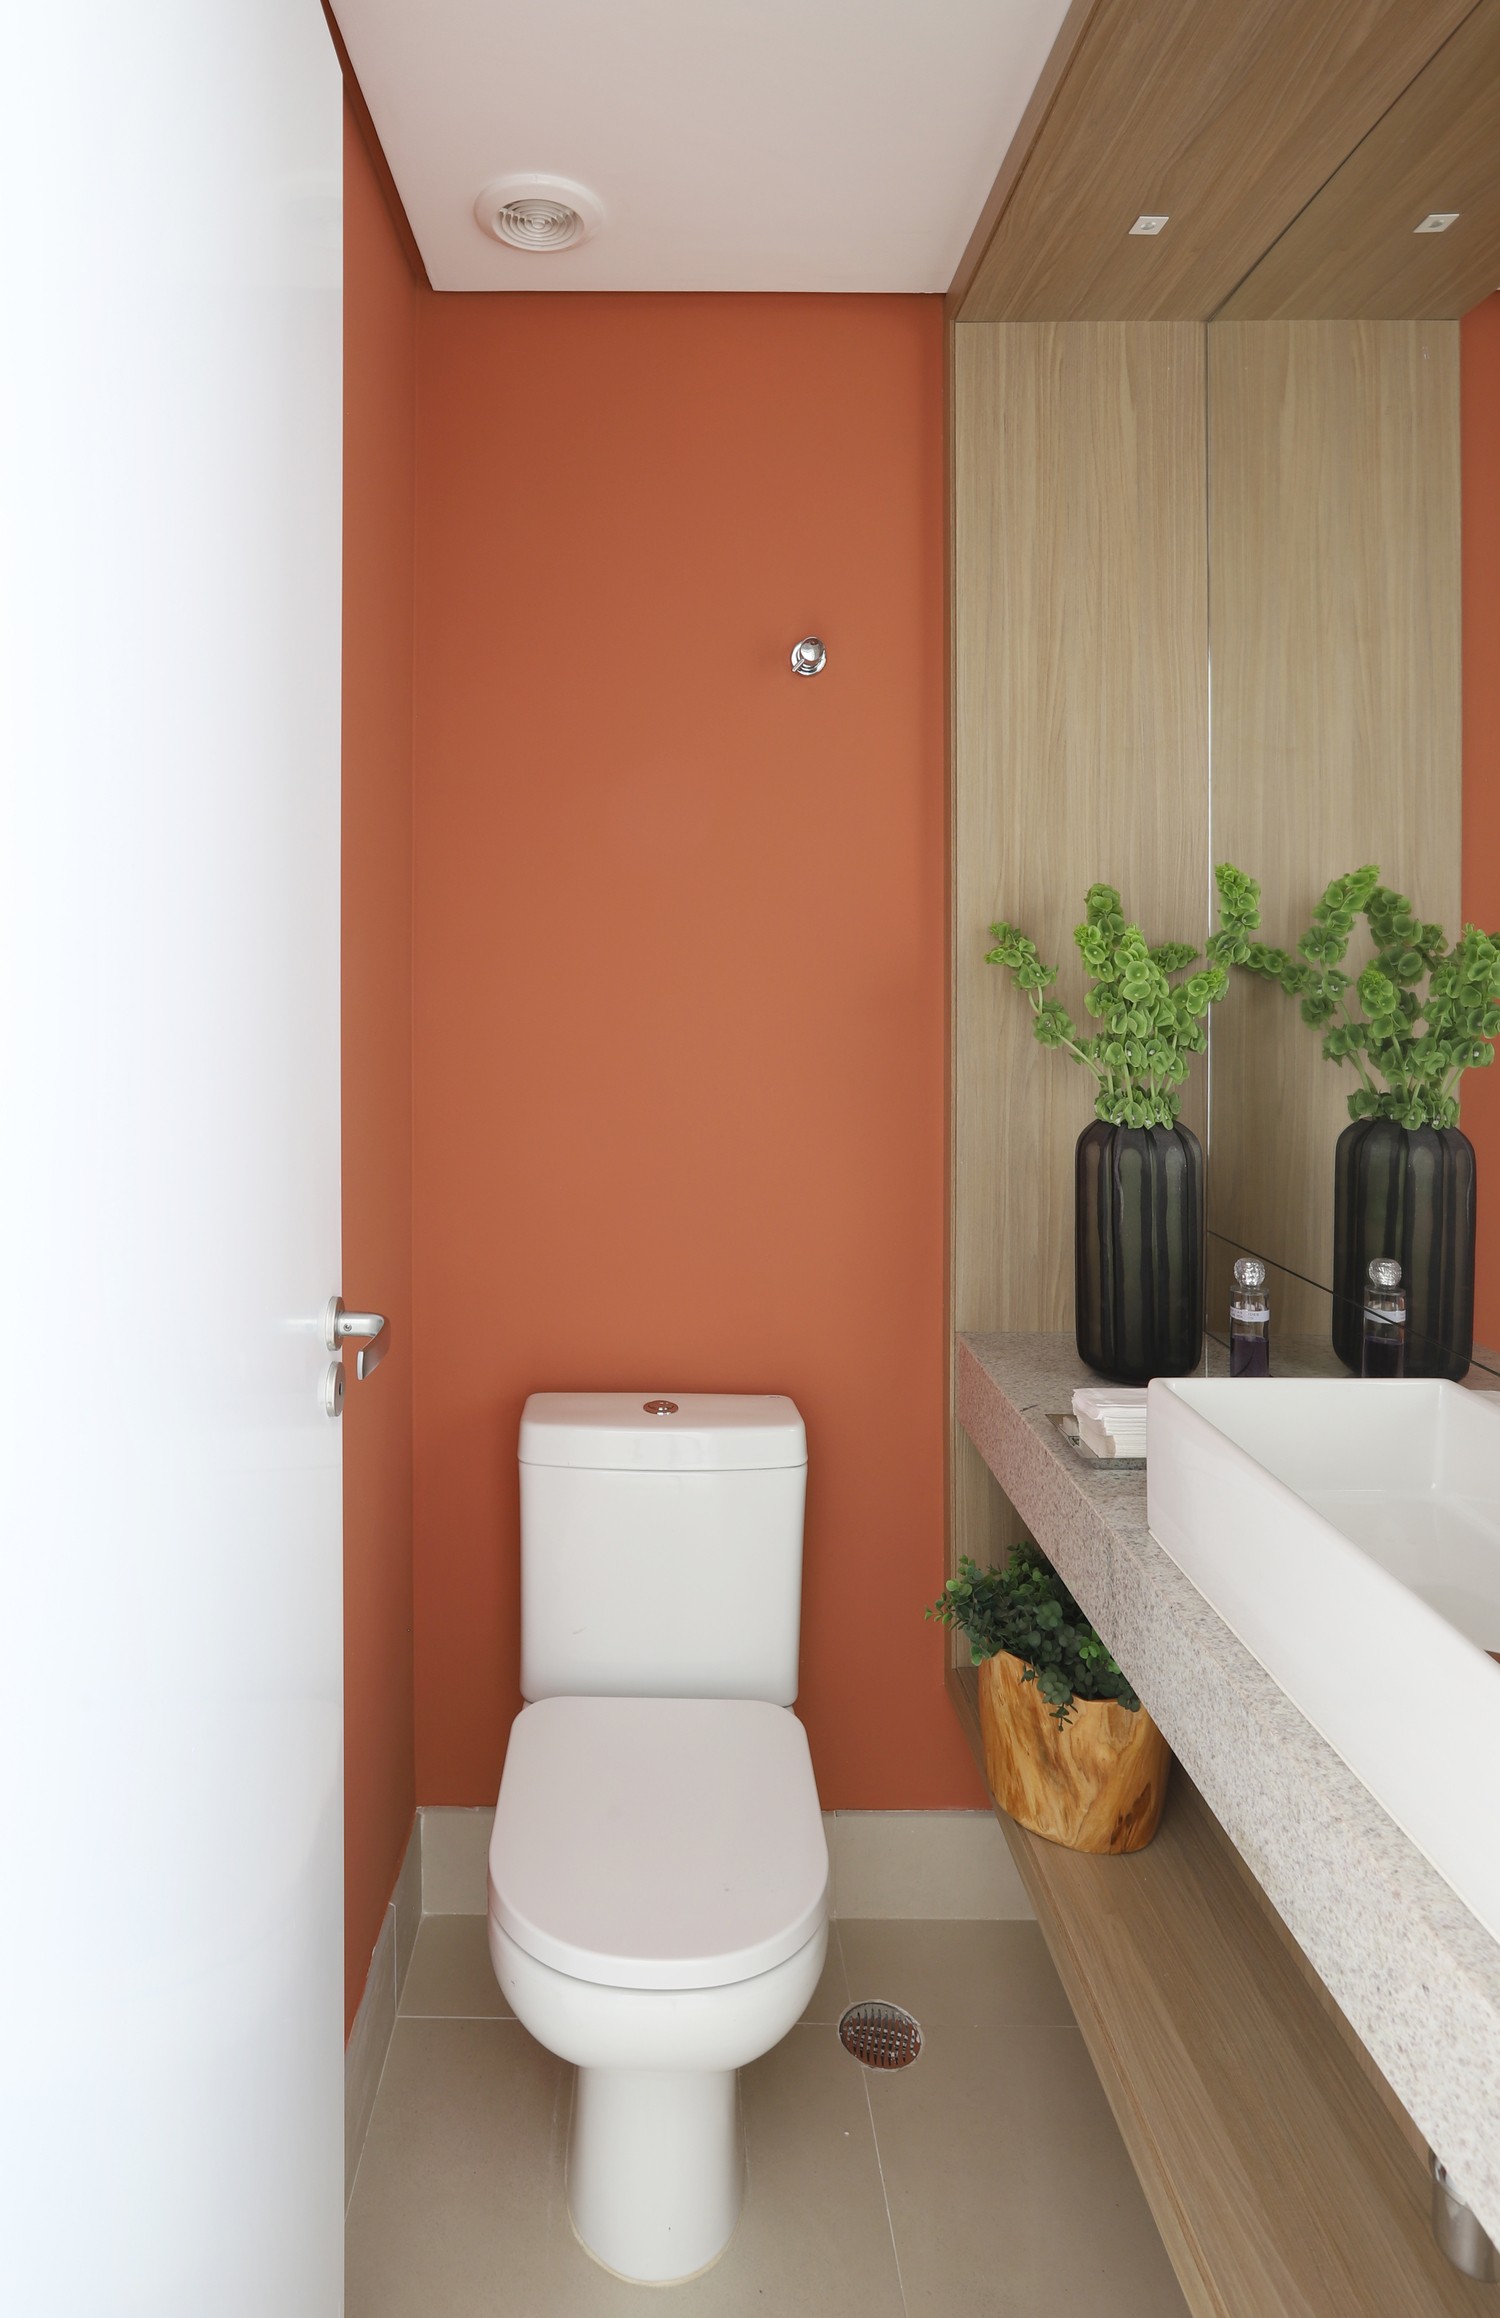 LAVABO | No lavabo, a parede colorida em um tom alaranjado traz unidade aos tons usados em todo projeto (Foto: Divulgação / Mariana Orsi)